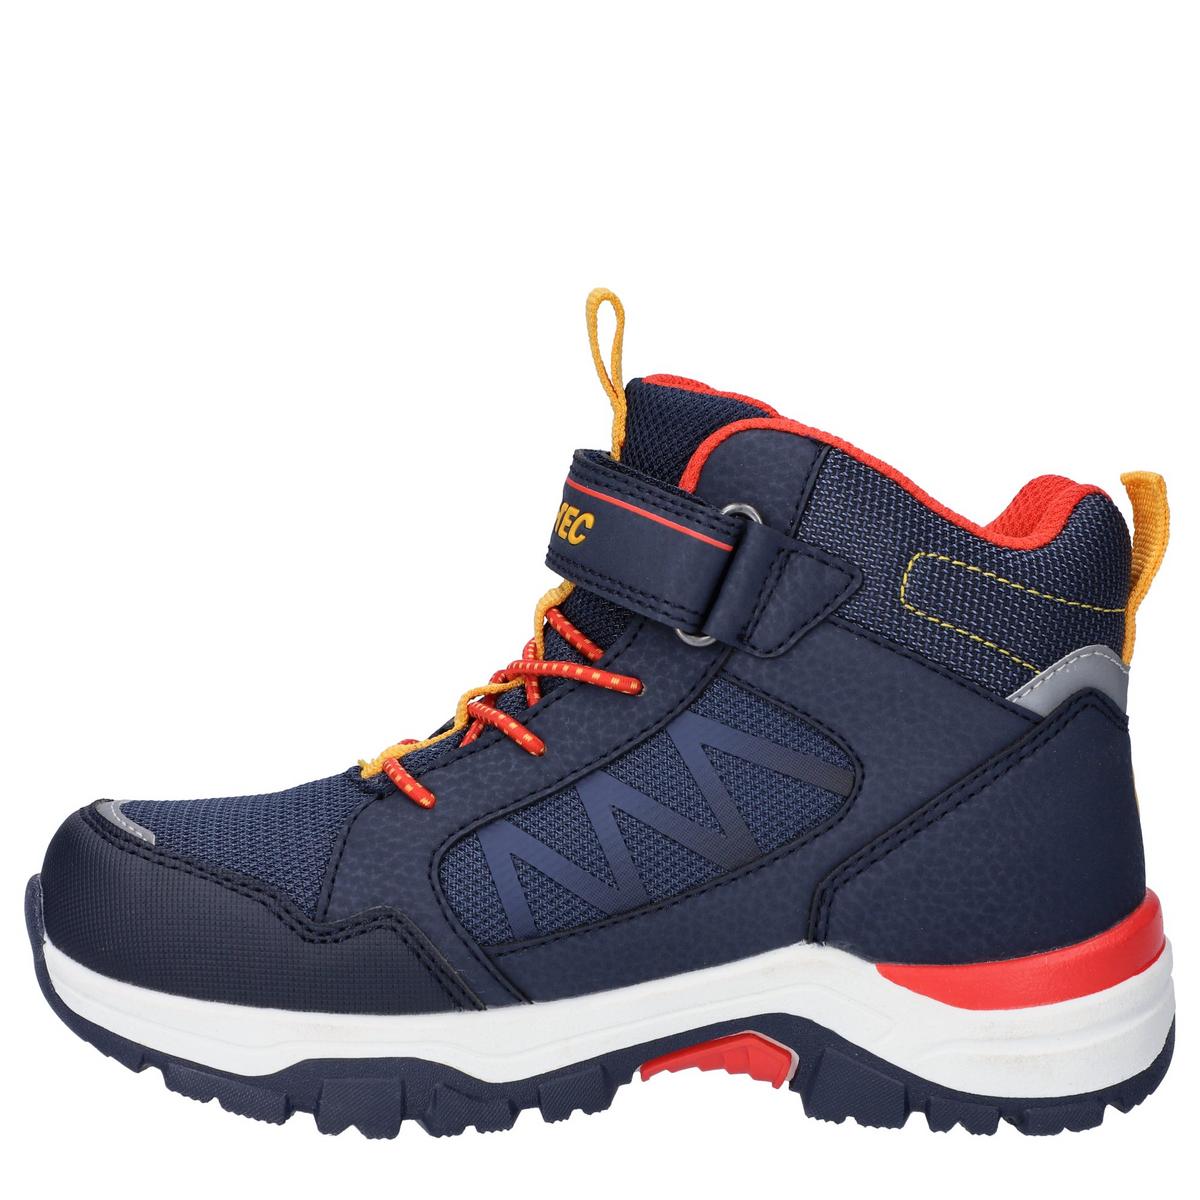 Hi-tec Kids K Rush Waterproof Boots - Navy/Orange